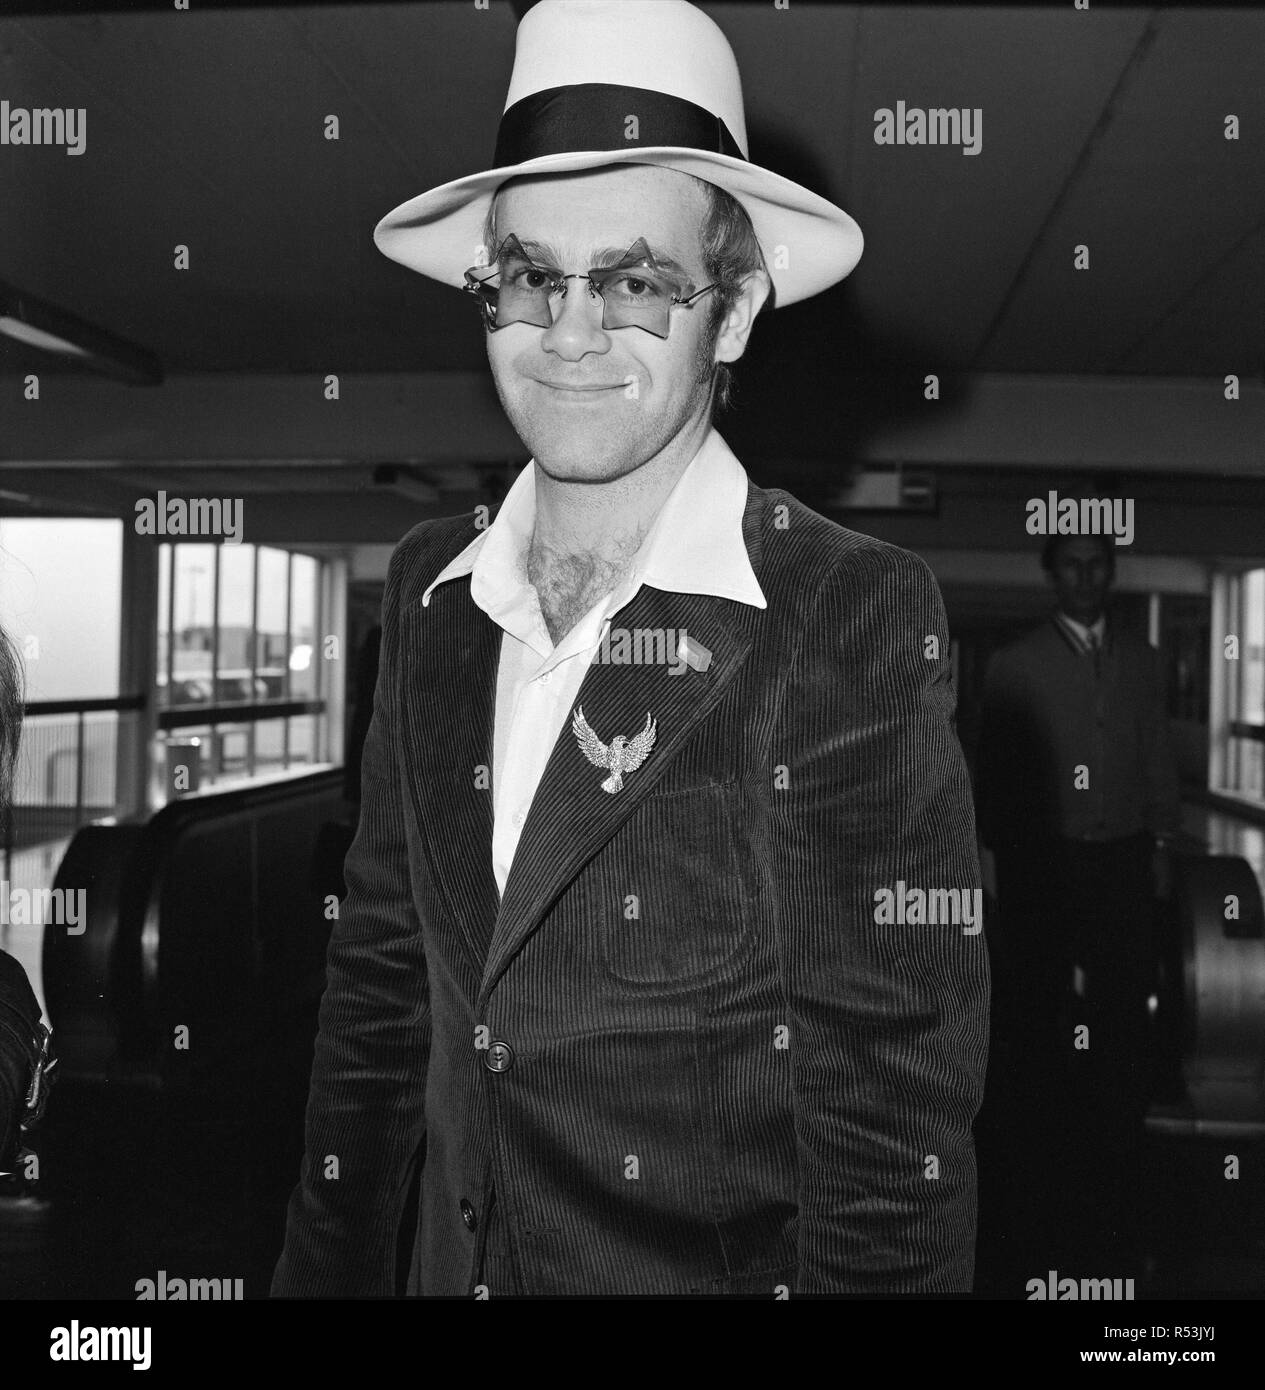 Elton John verlässt den Flughafen Heathrow. Er wird nach Los Angeles für die Partei der Elton John's Manager. Bild 9 September 1974 getroffen Stockfoto